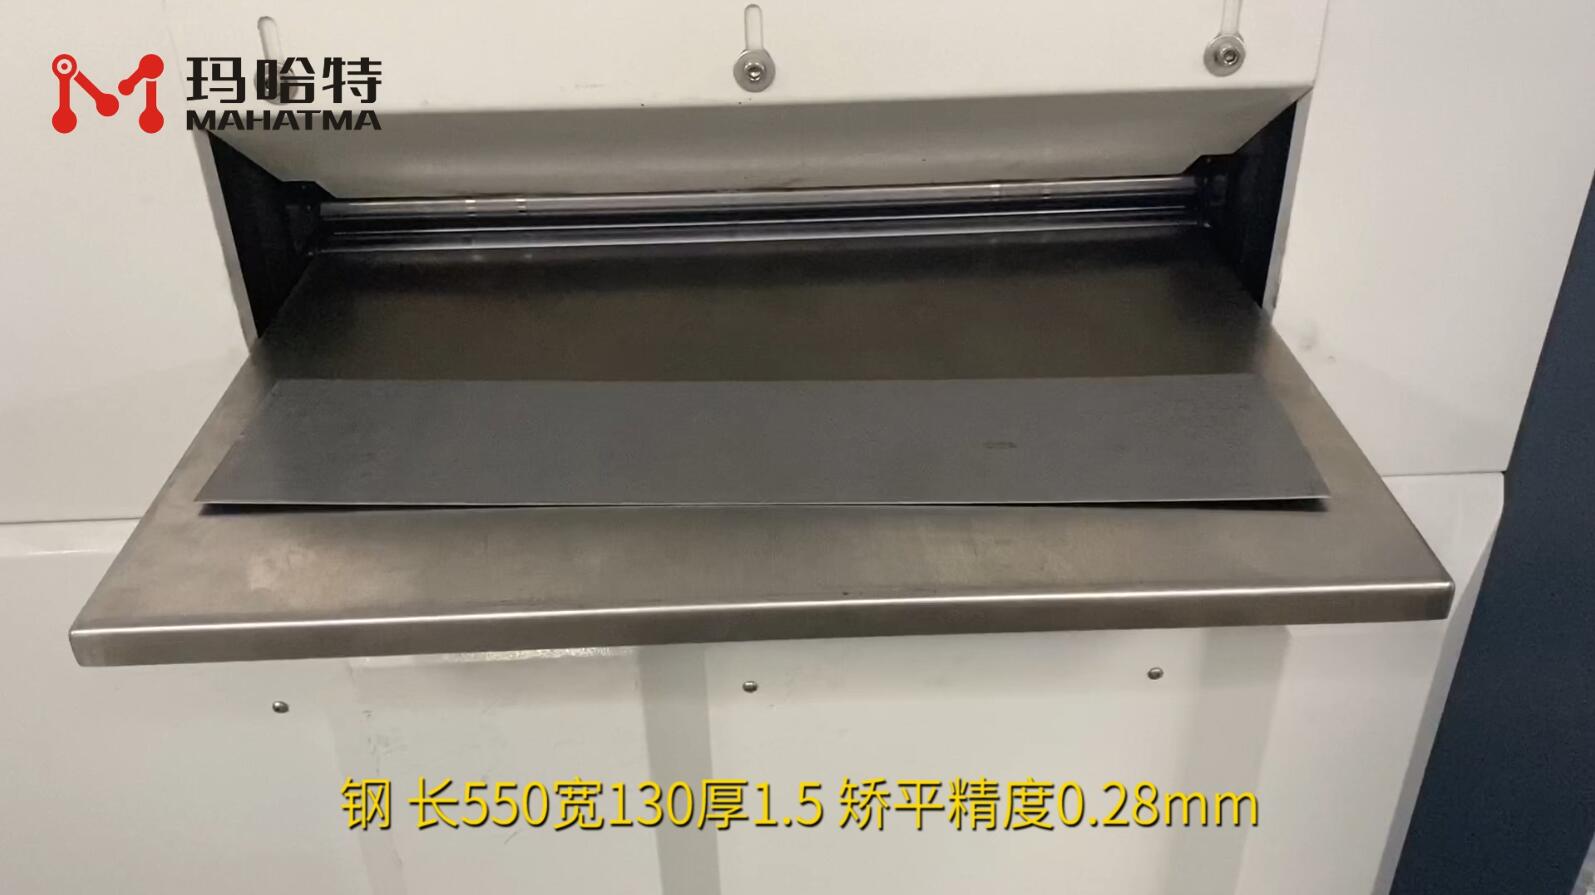 钢 MHT30-400 长方形 长550宽130厚1.5 矫平精度0.28mm